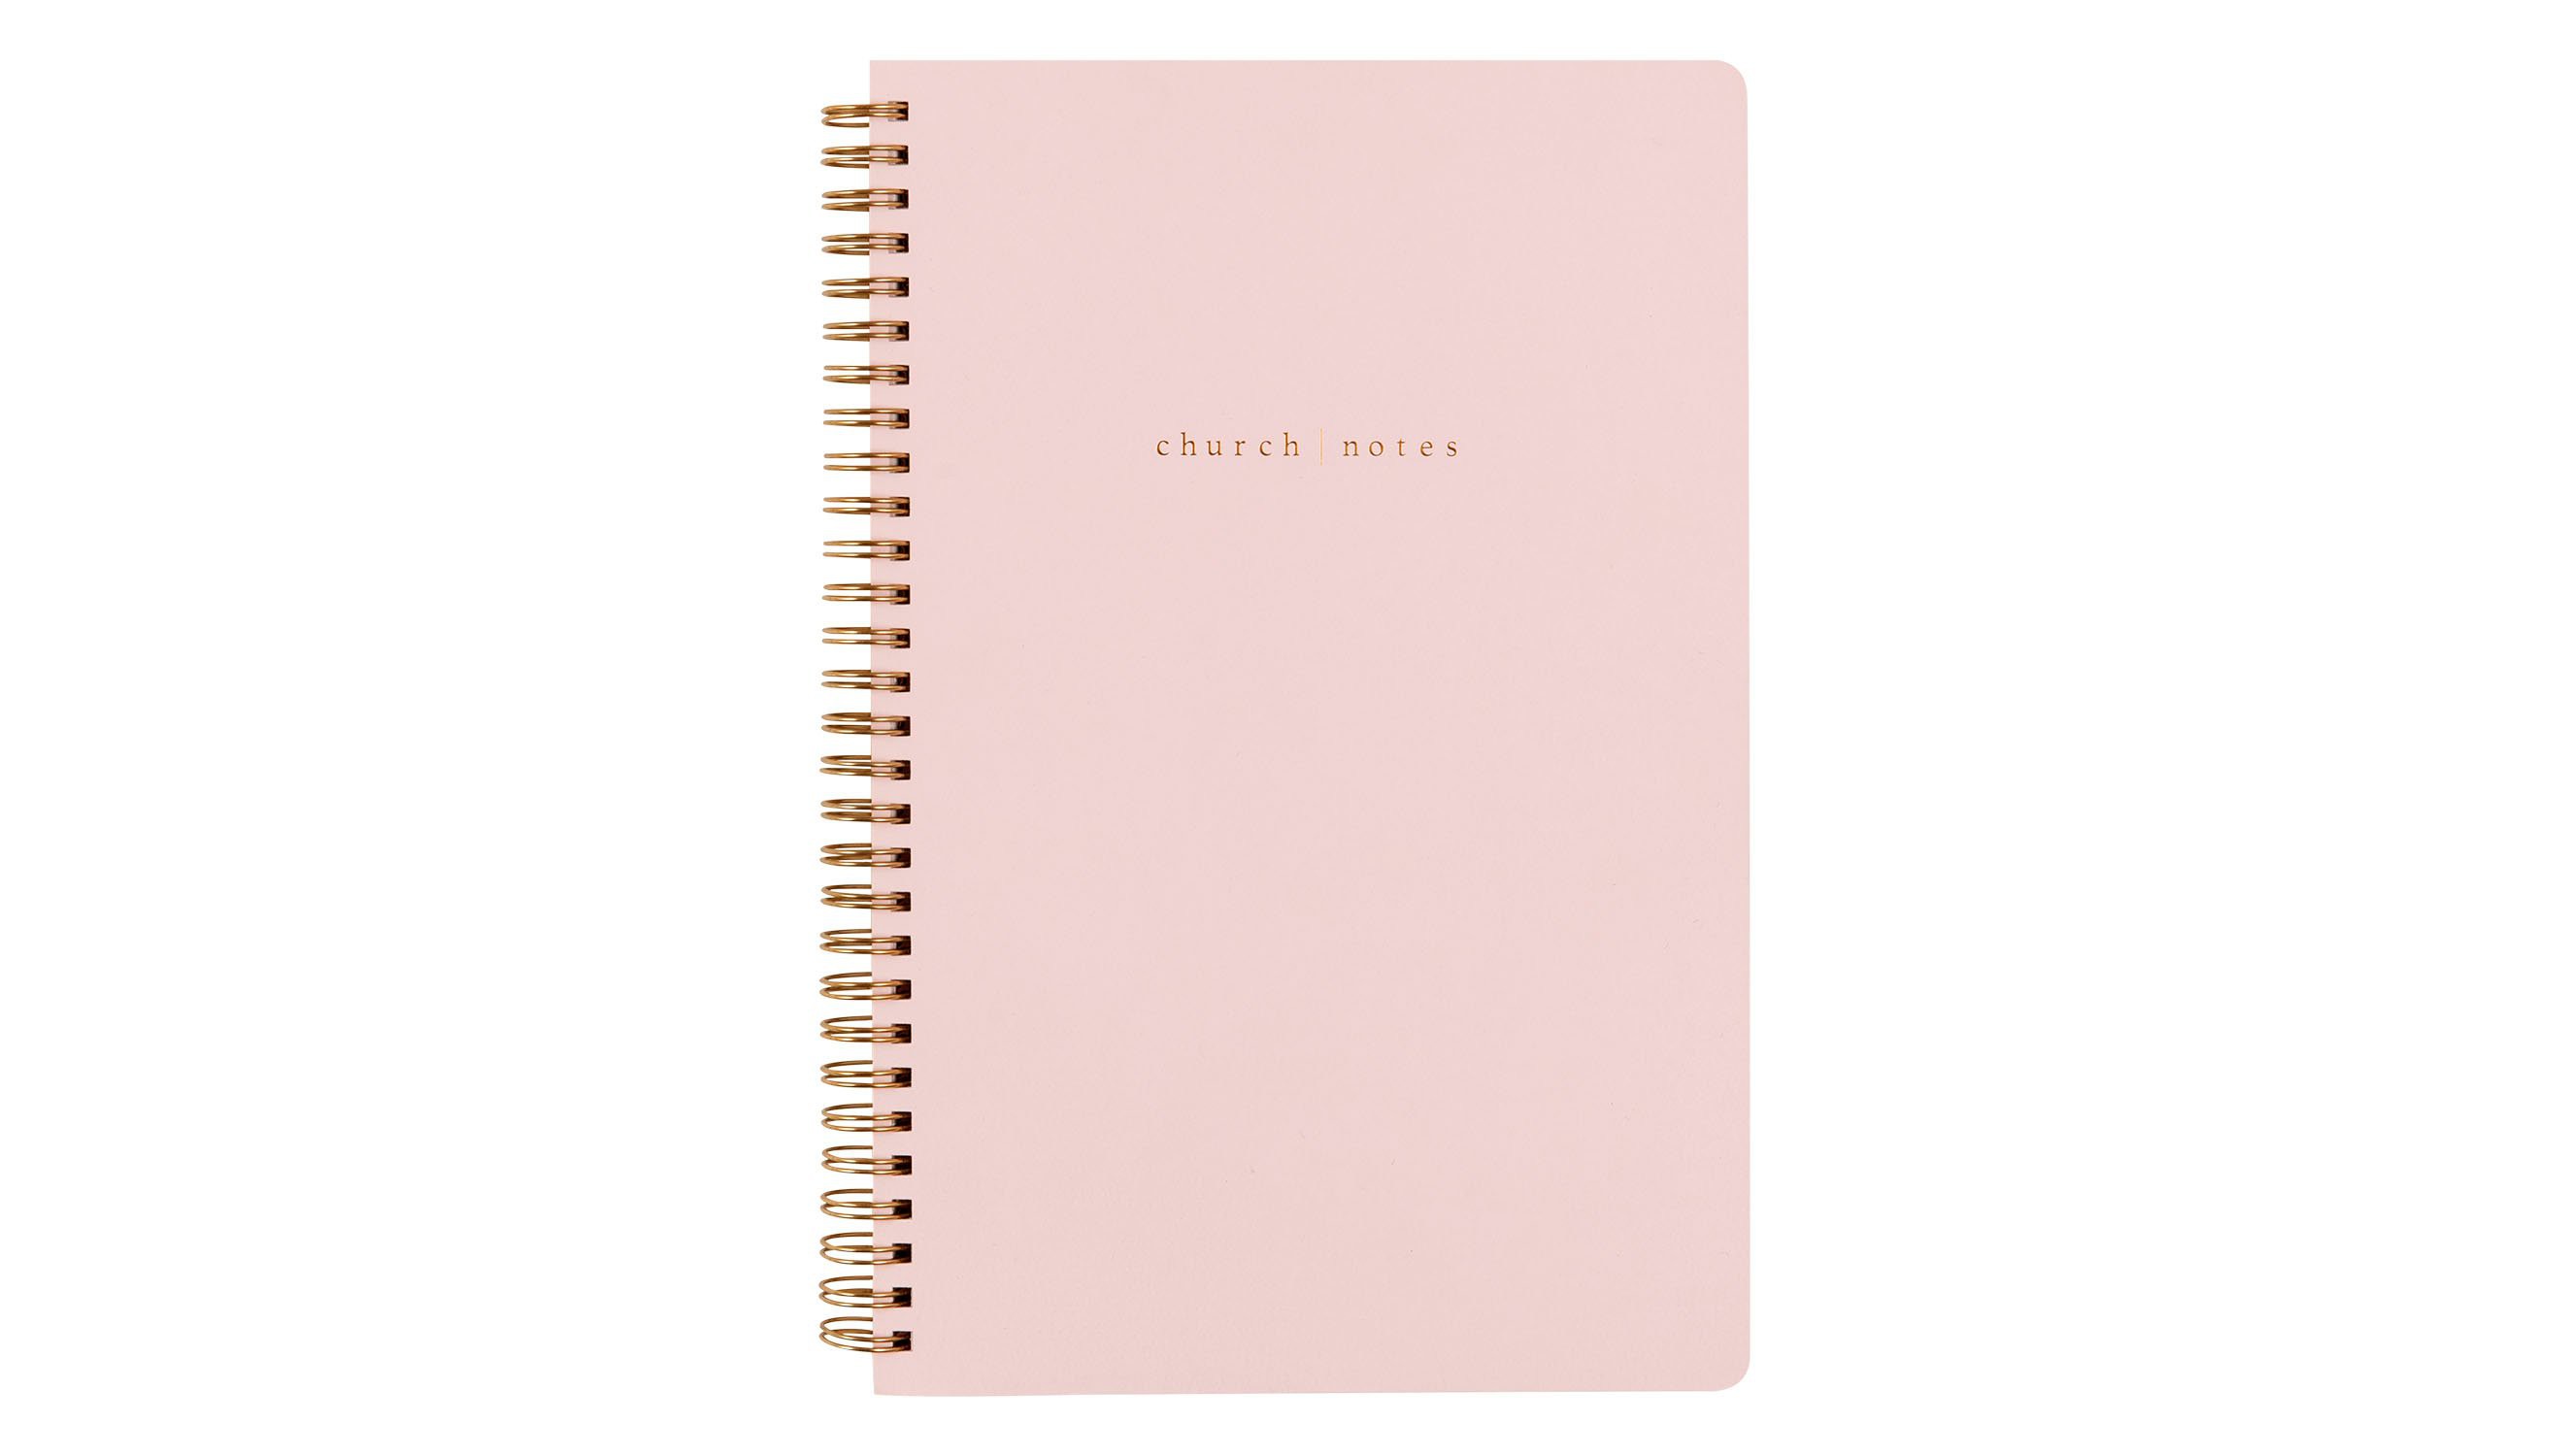 Blush Pink Sketchbook Gold Script Monogram Name Notebook